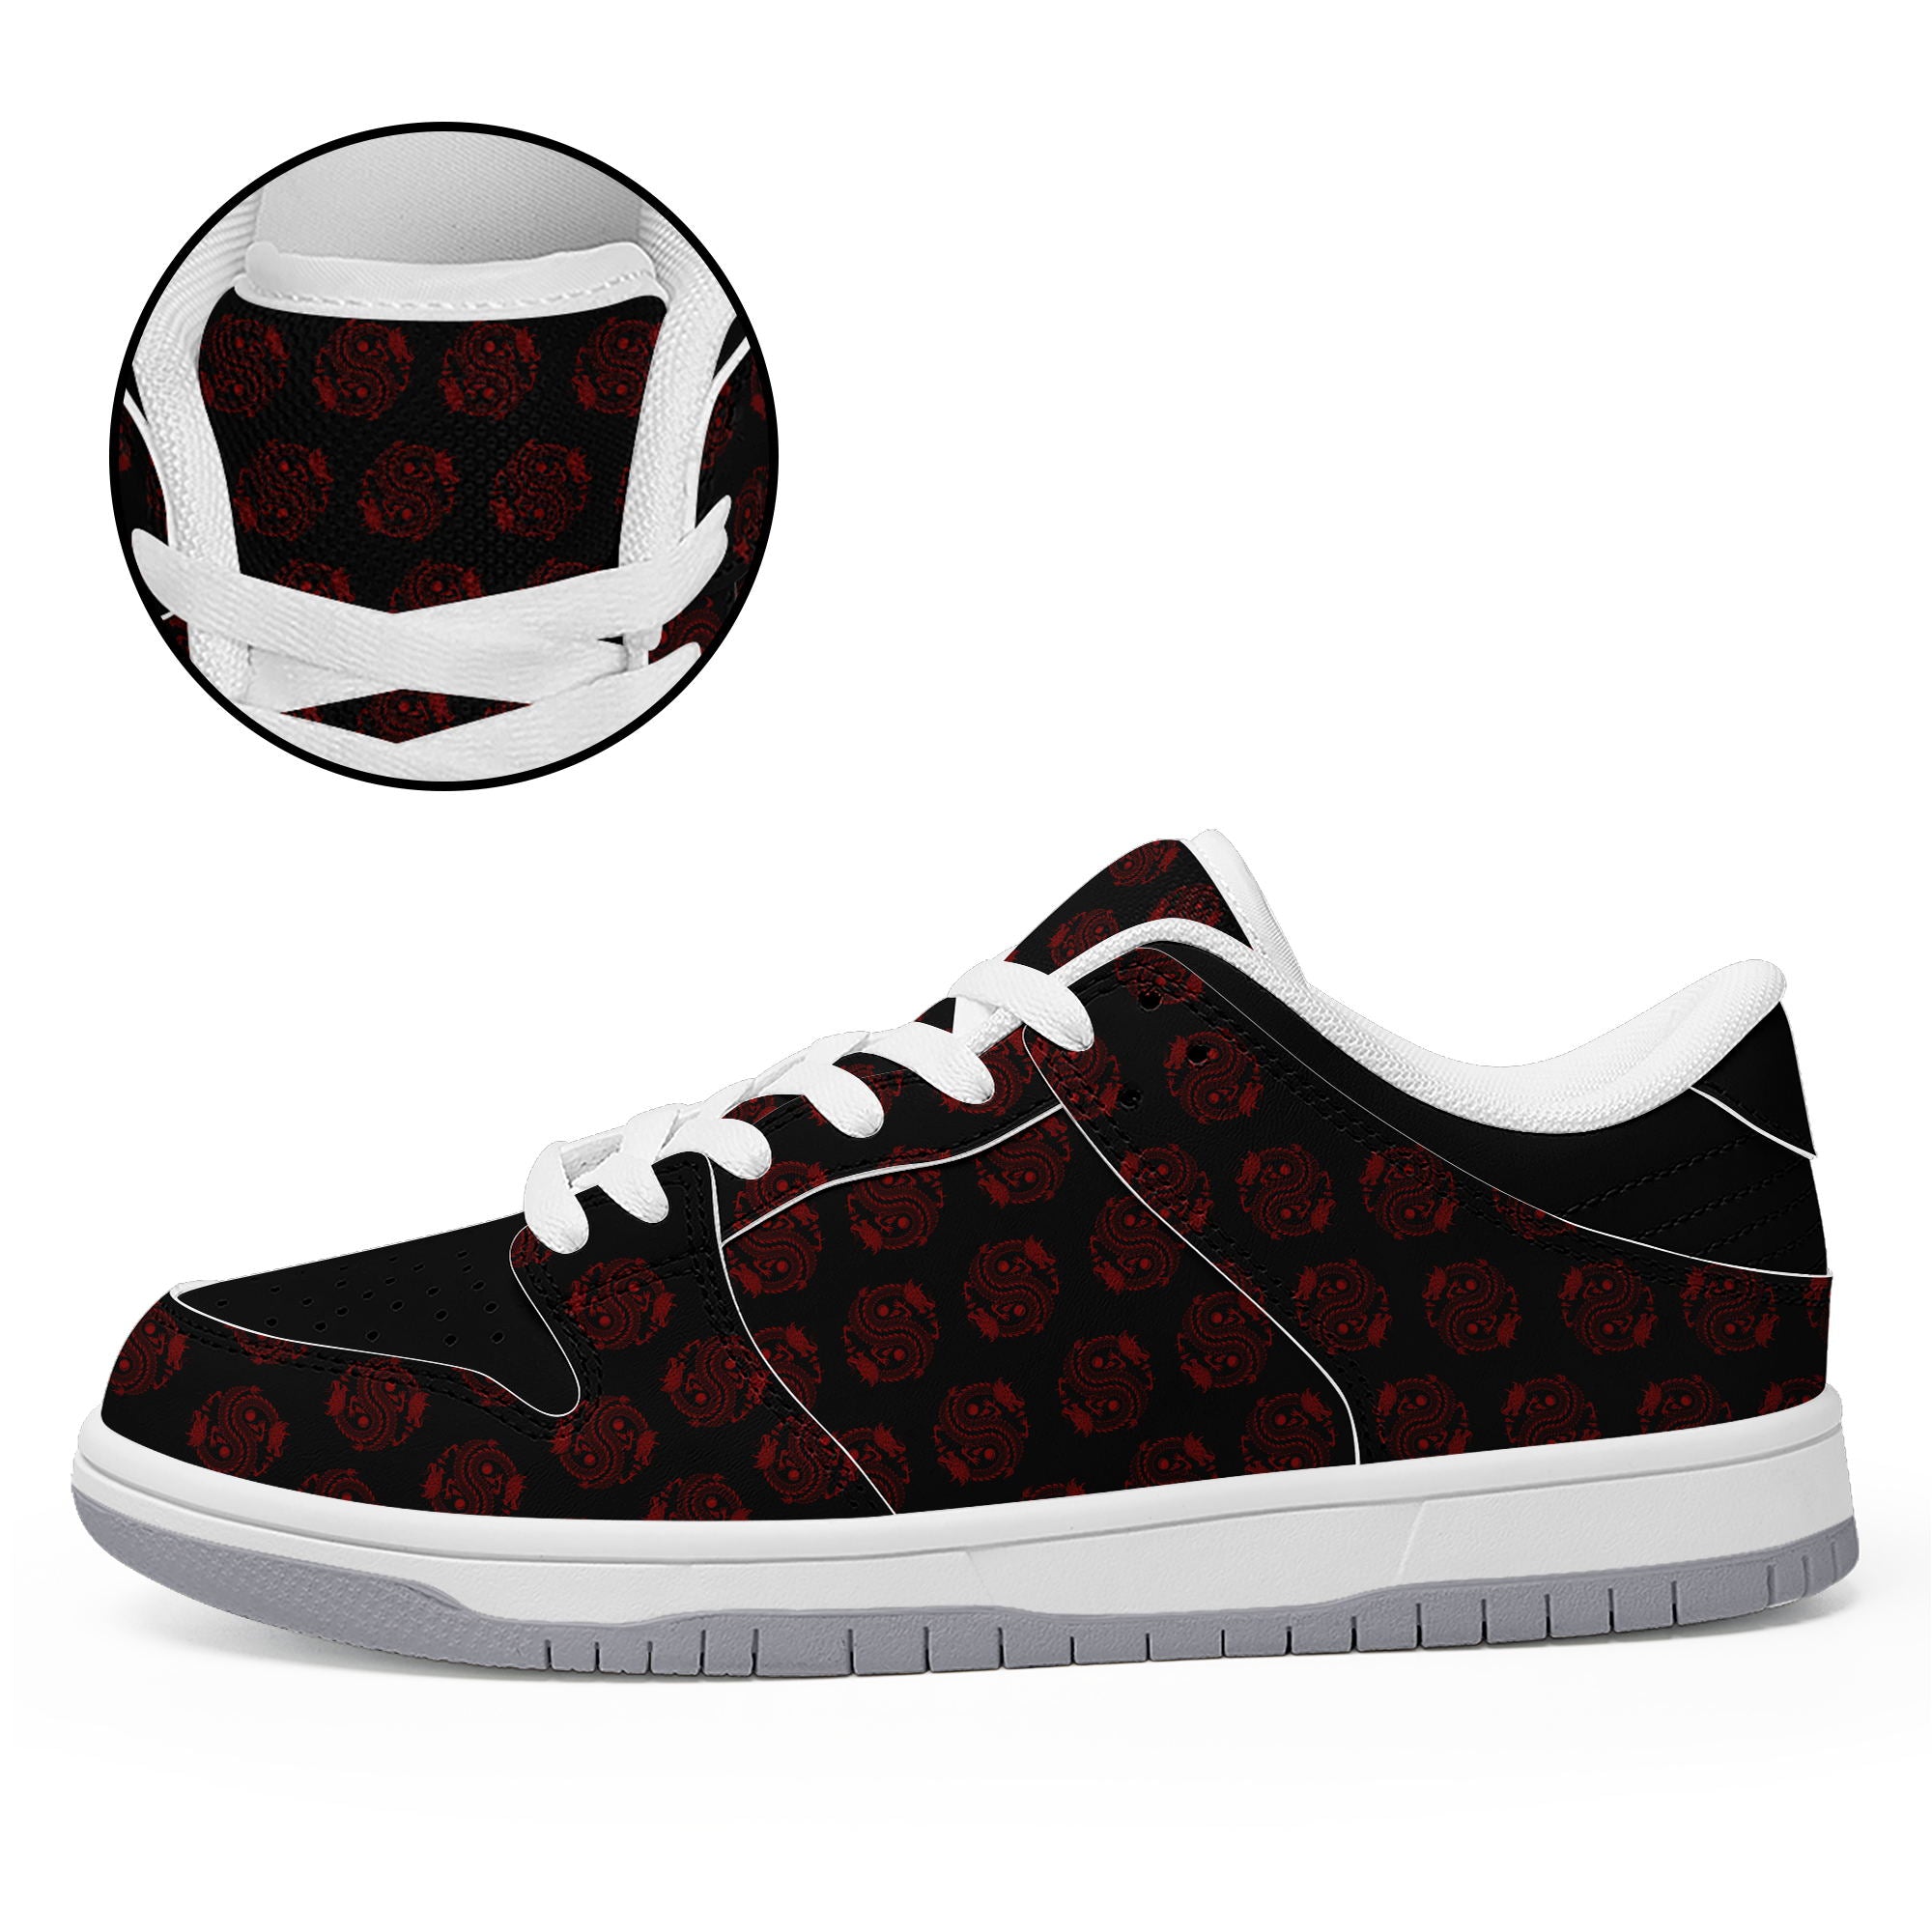 柔性定制打印个性化设计中国龙图腾休闲鞋黑红色白鞋带DK-24025005_7